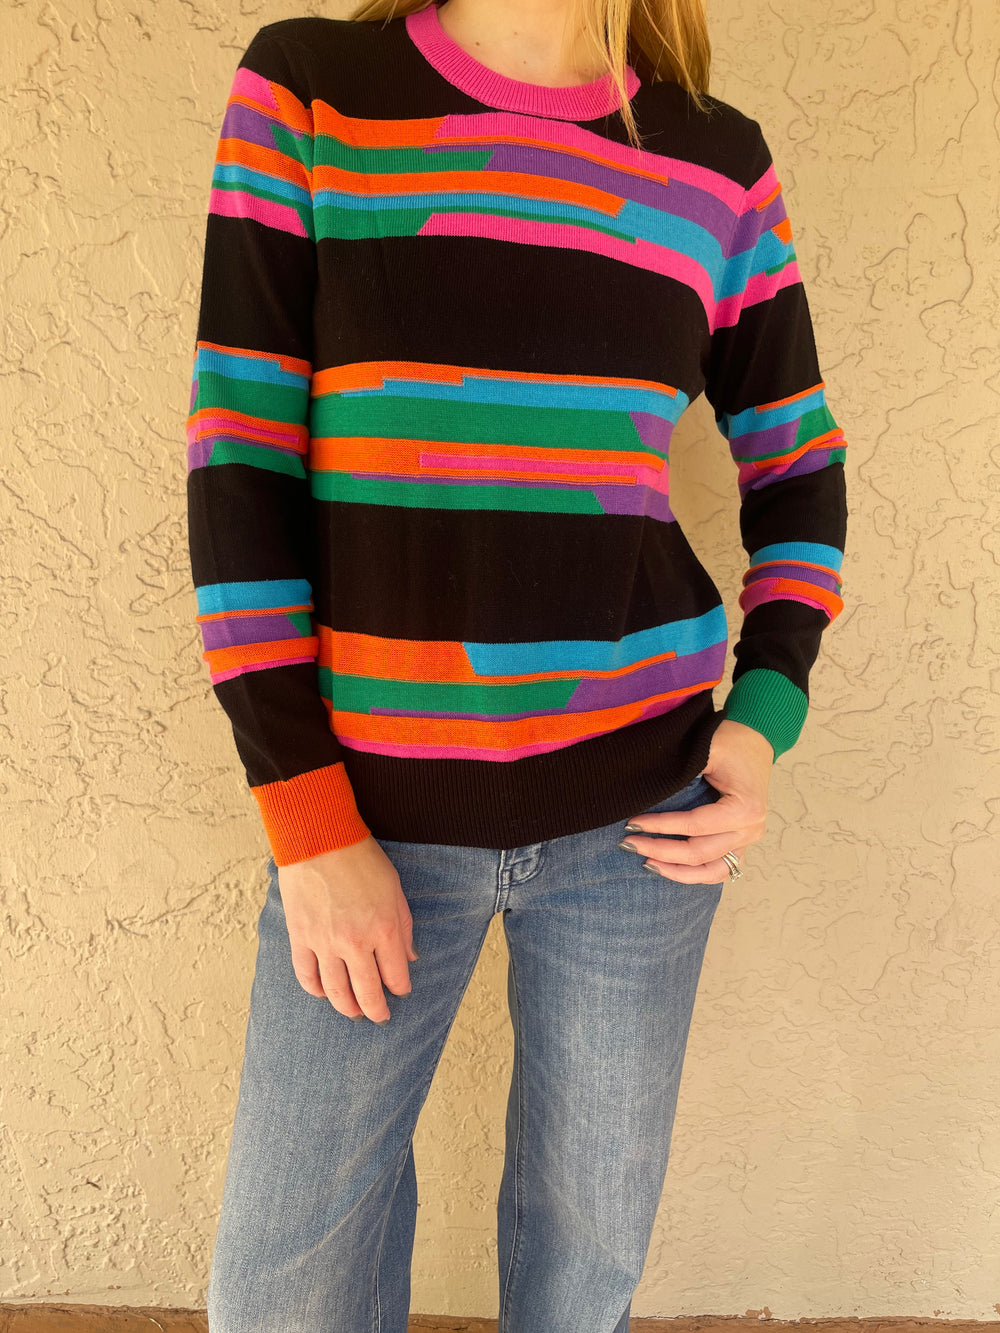 Zaket & Plover Jacquard Stripe Sweater